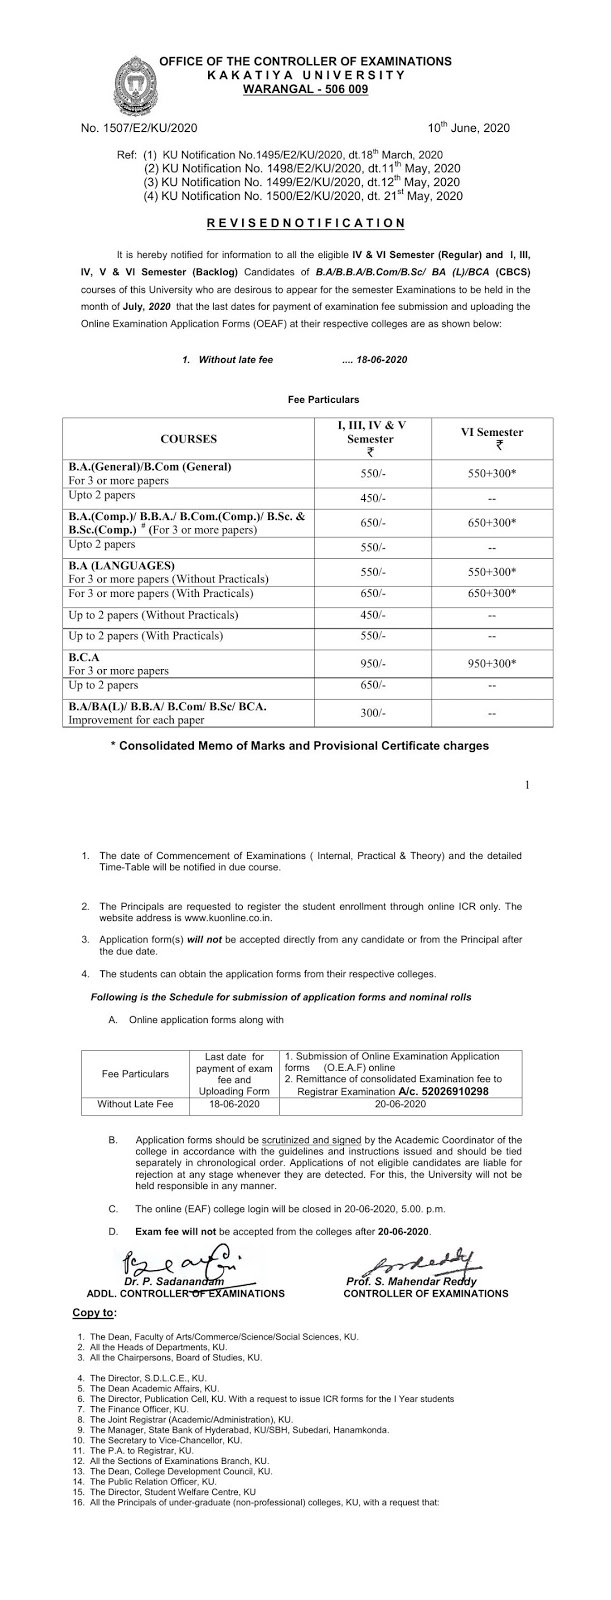 kakatiya university ug 3rd to 6th sem, 1st sem reg & backlog july 2020 re-revised notification